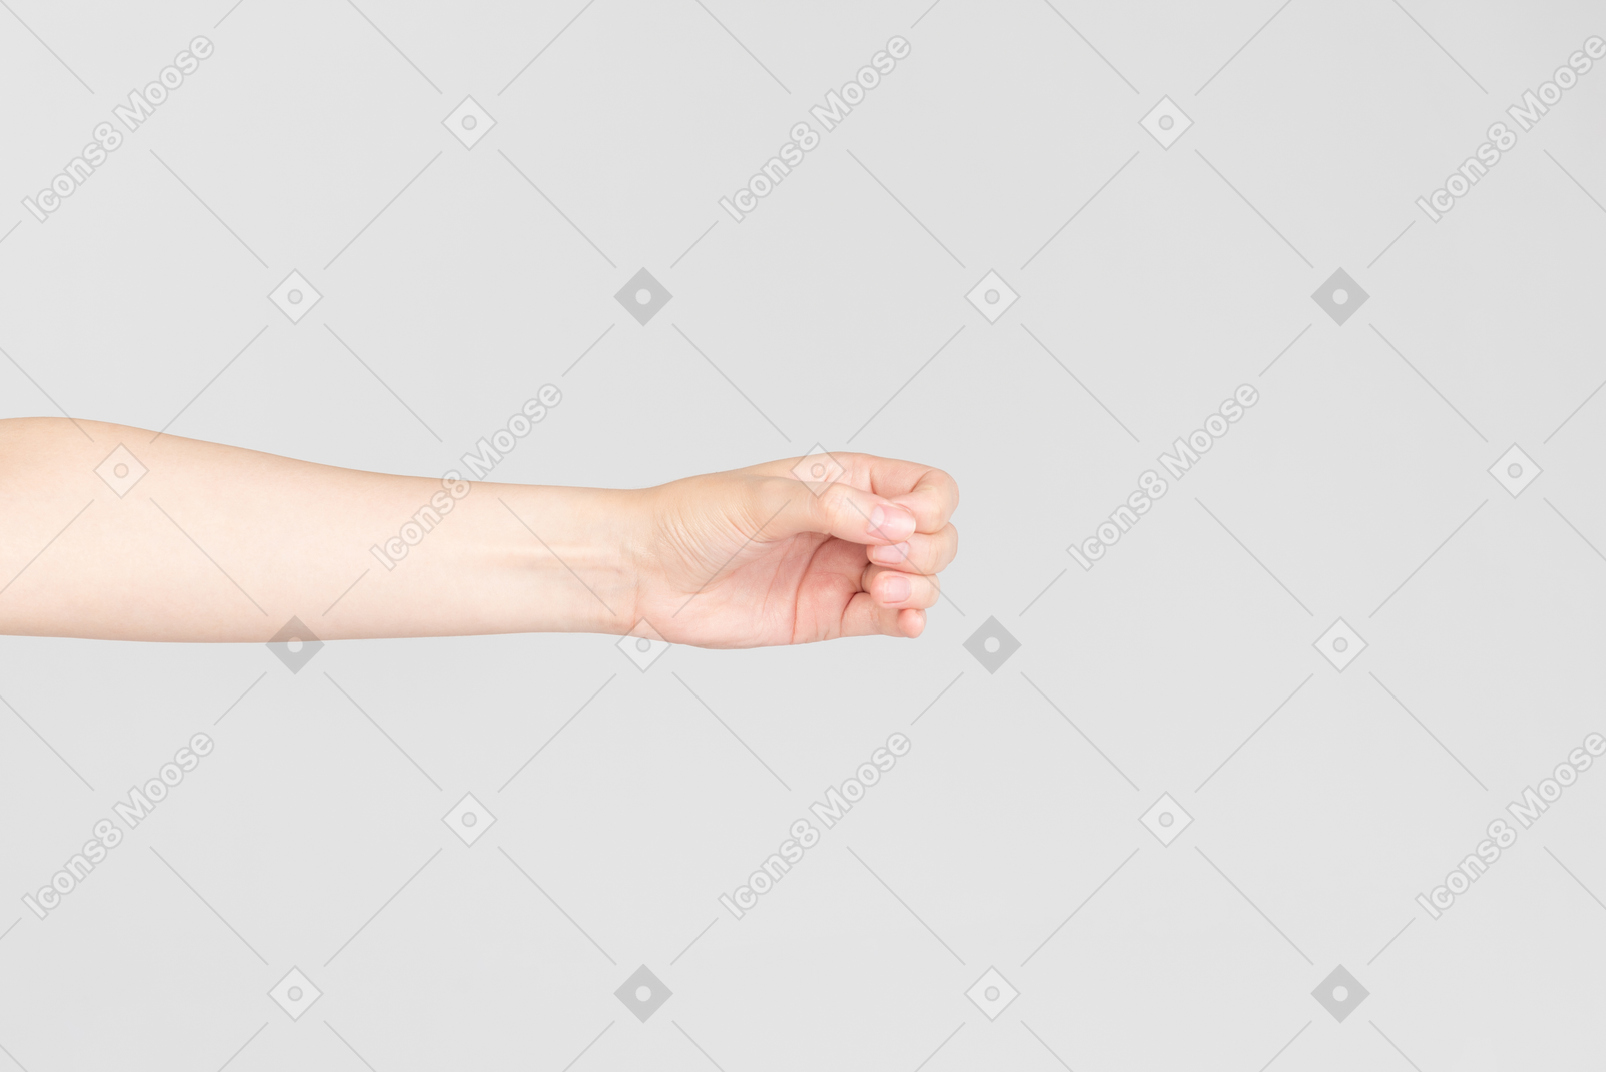 손으로 원을 만드는 여성 손의 측면 모습